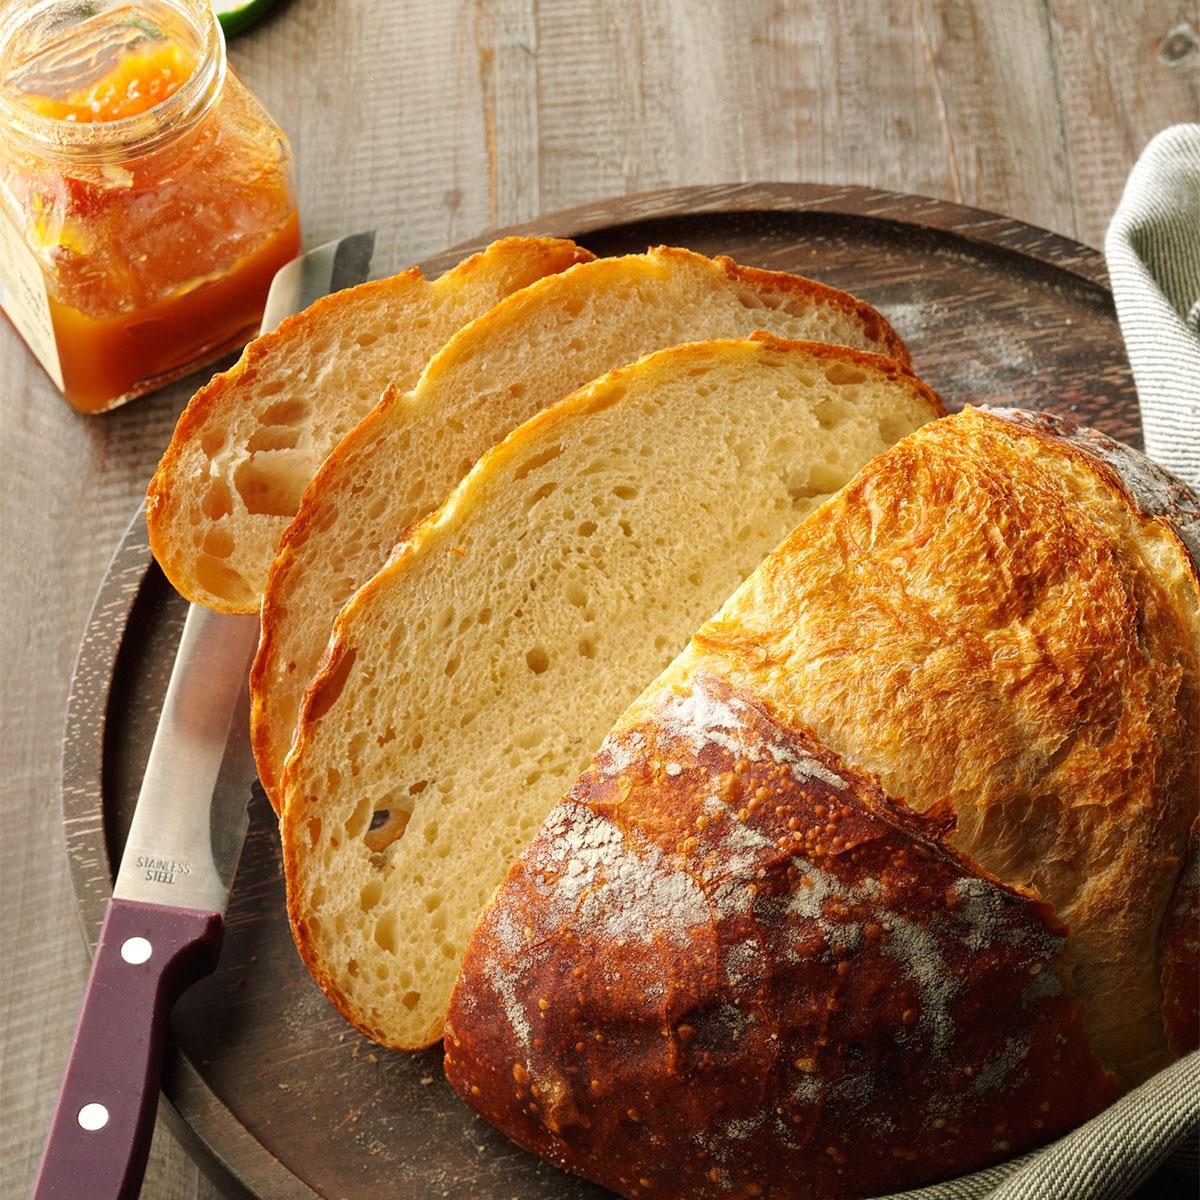 Tips for Baking Homemade Bread